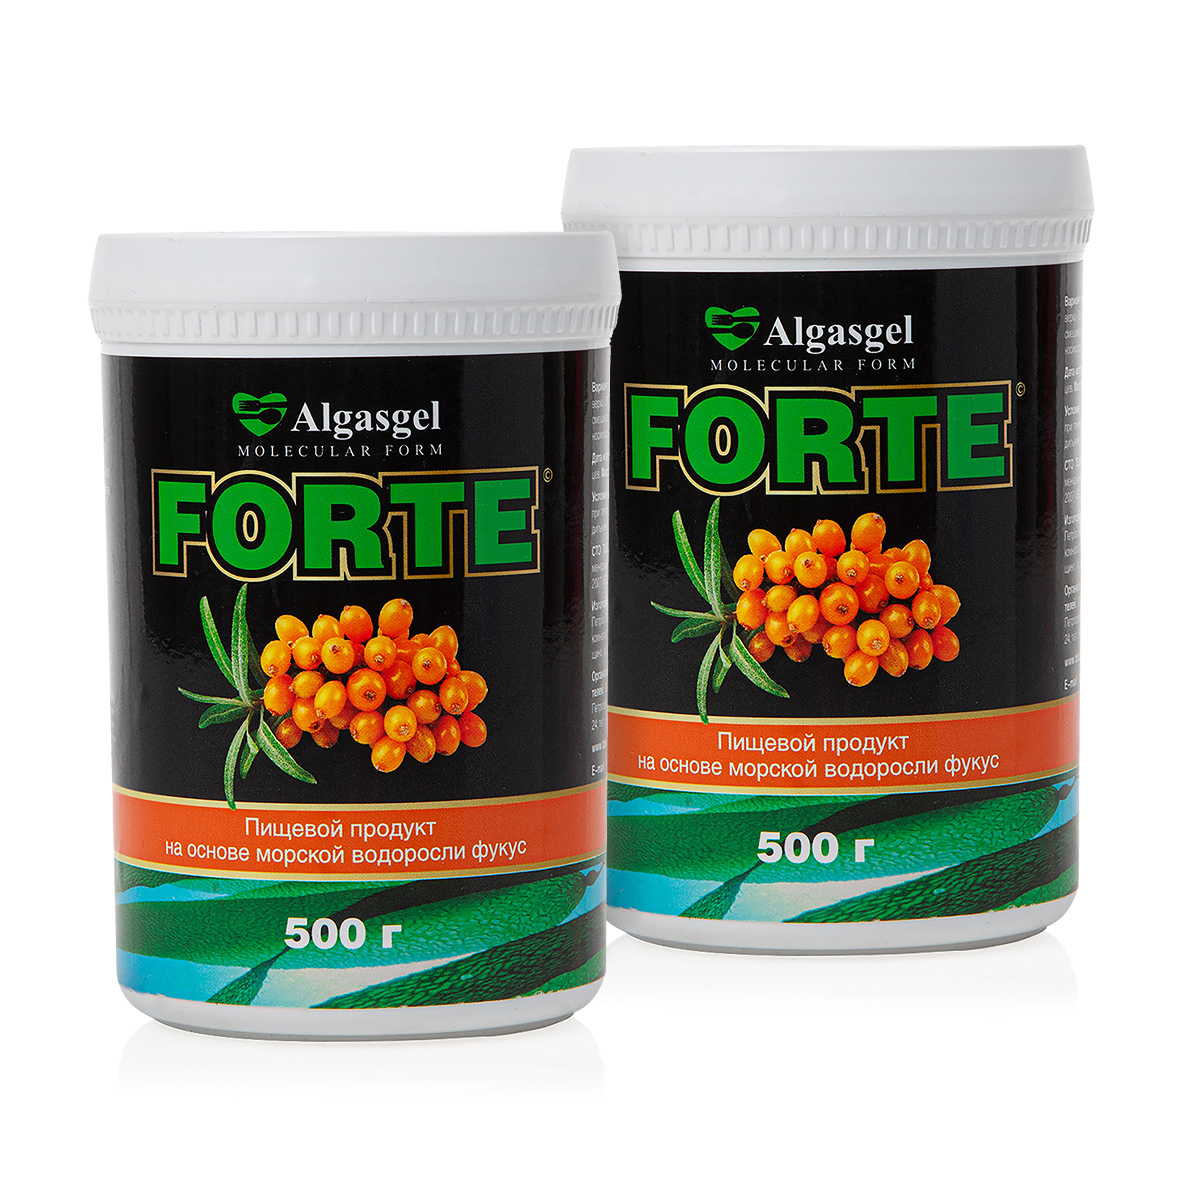 algasgel halal пищевой продукт на основе морской водоросли фукус 2 уп по 500 г 1 в подарок Пищевой продукт Algasgel Forte (2 шт. по 500 г) + подарок (500 г)